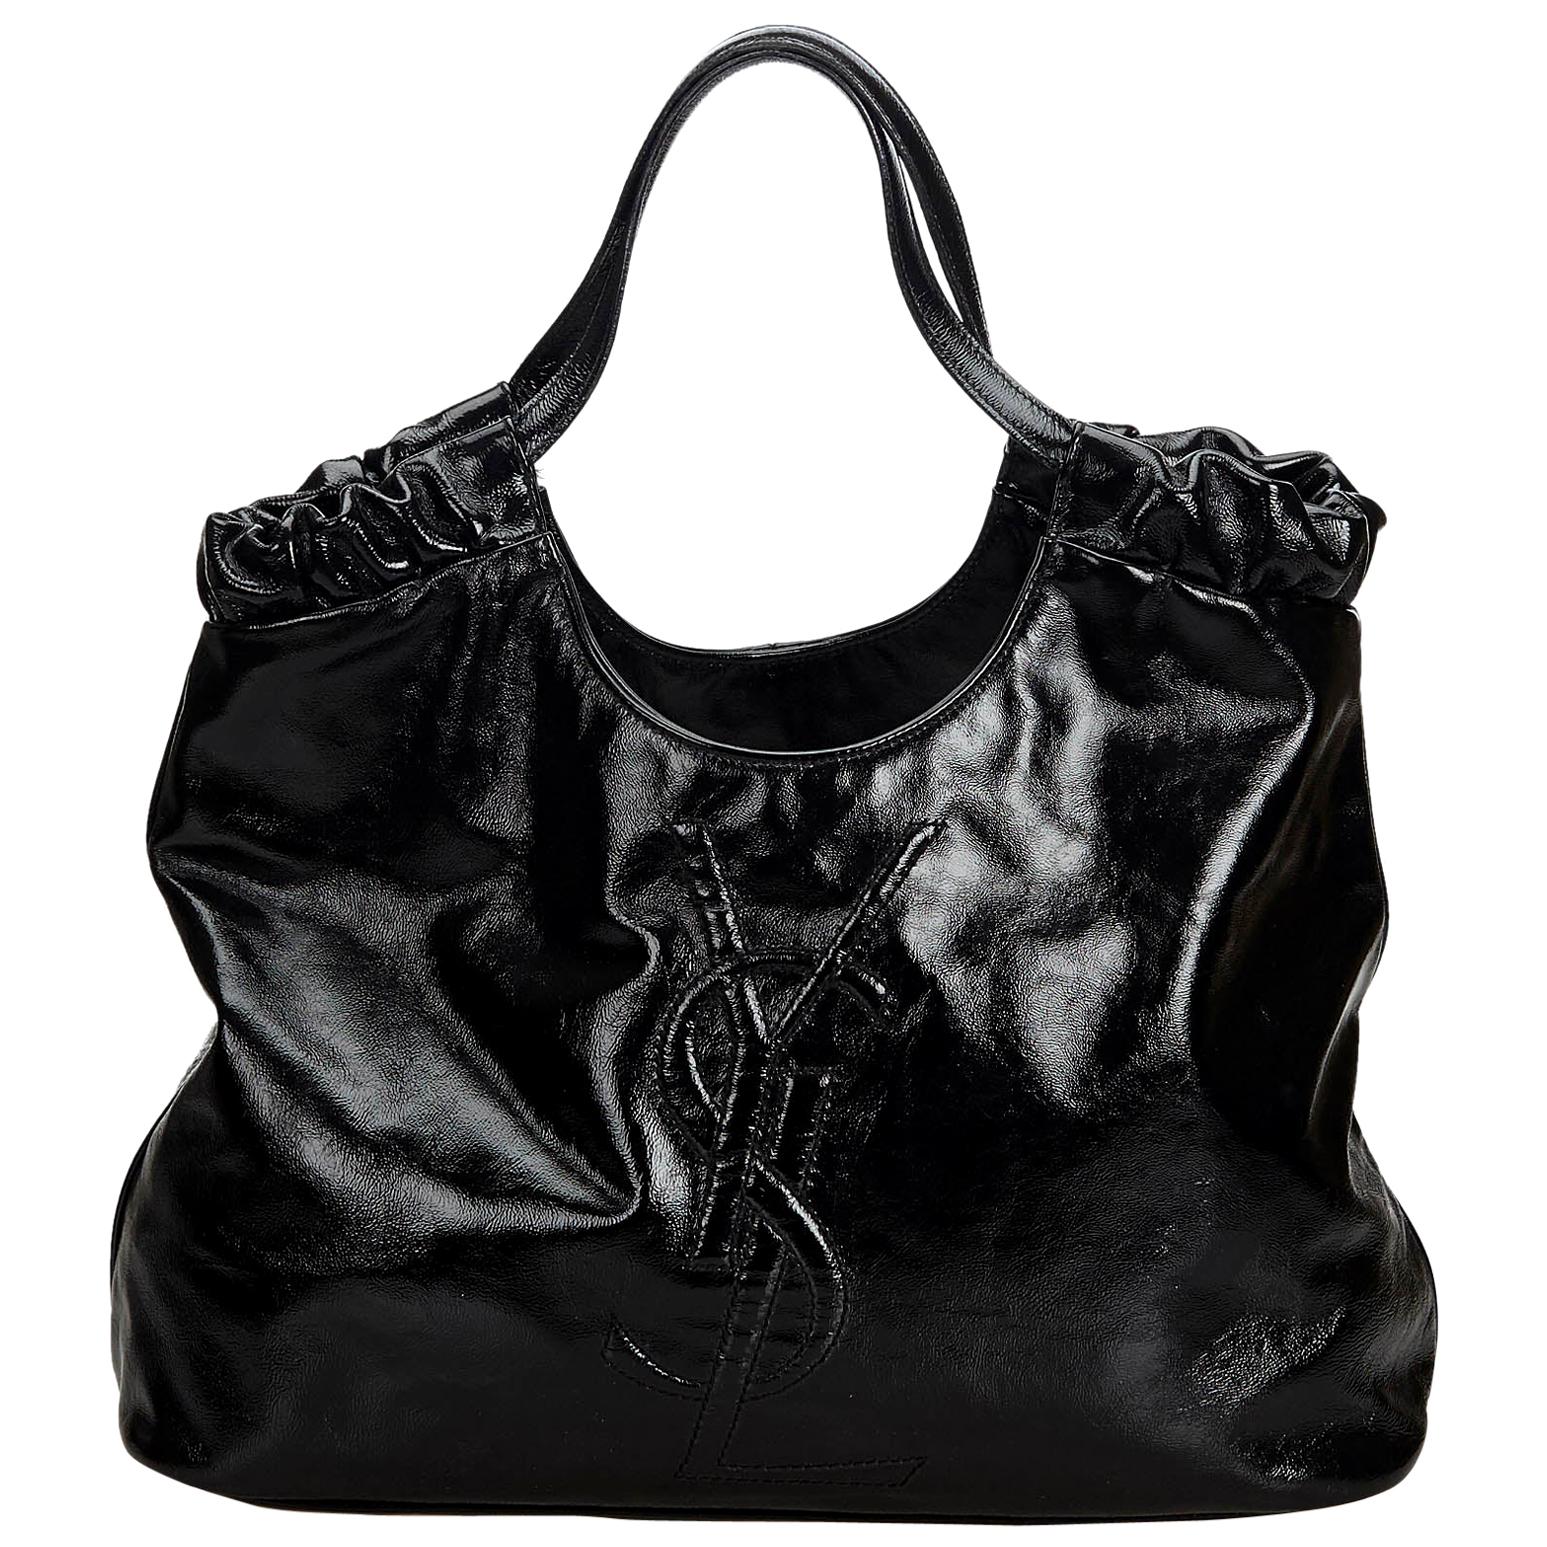 Vintage Authentic YSL Black Patent Leather Belle de Jour Tote Bag France LARGE  For Sale